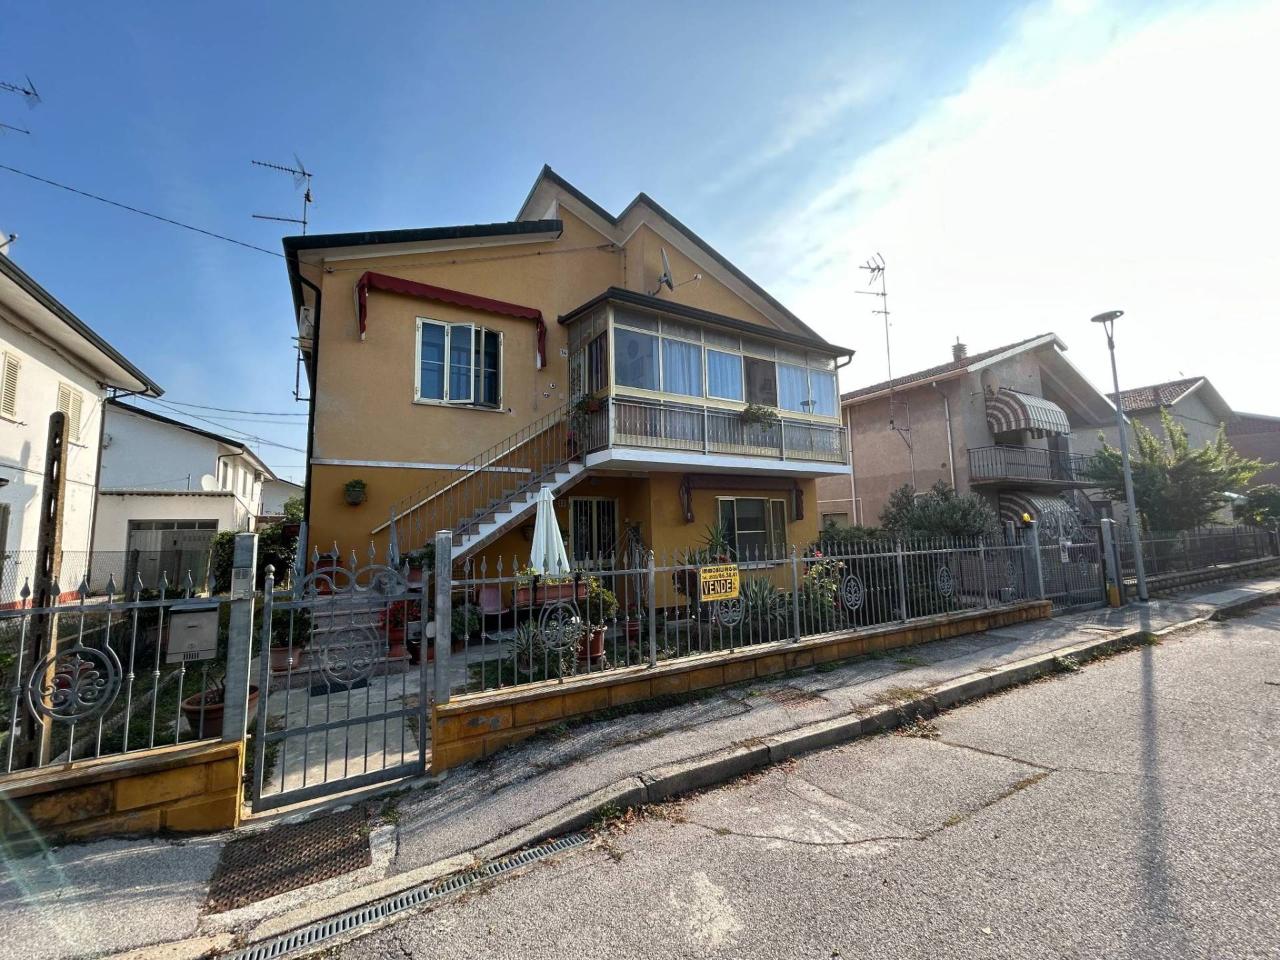 Villa in vendita a Copparo